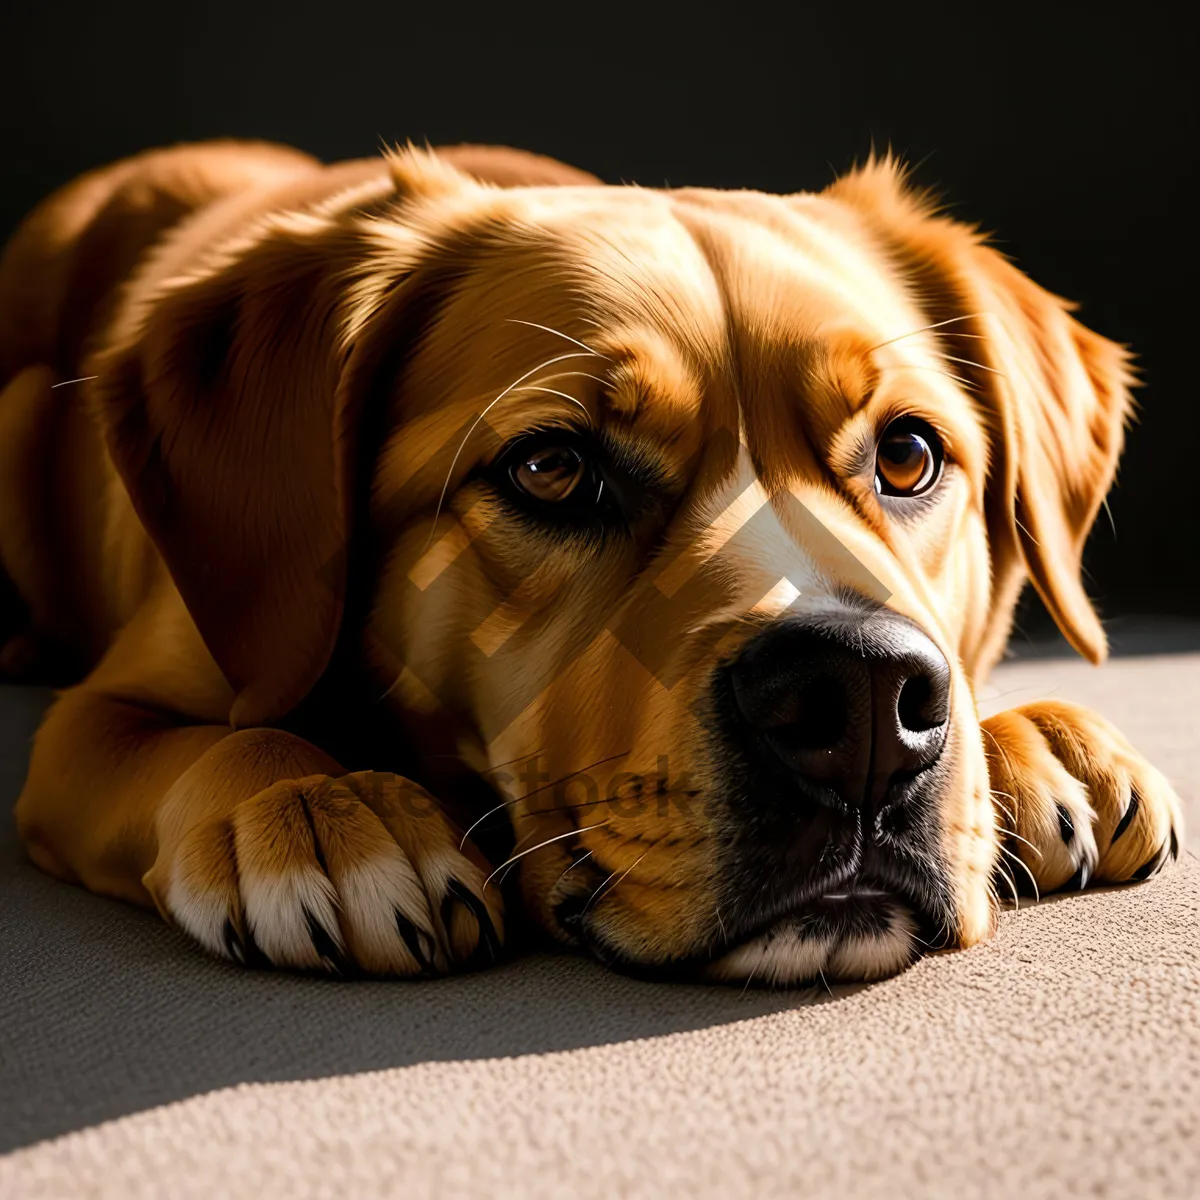 Picture of Adorable Beagle Puppy: Purebred, Cute Companion Dog